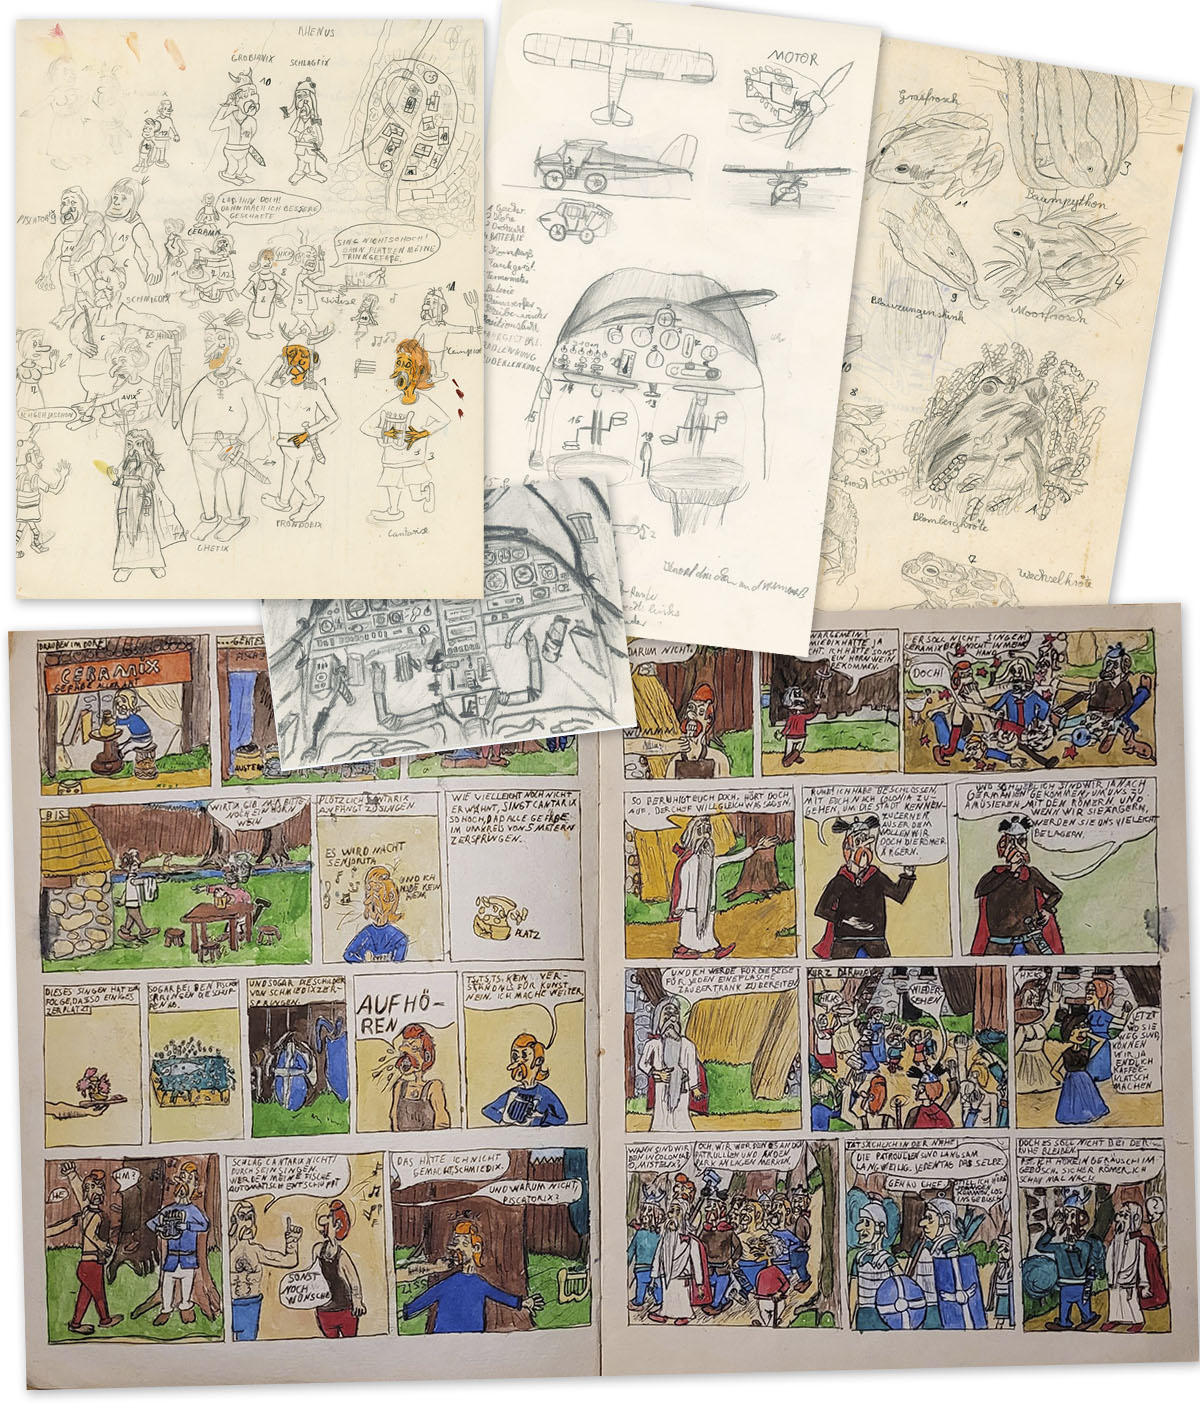 Ein paar Frühwerke. Blätter mit Zeichnungen von Reptiliern, Amphibien, Flugzeugen, Cockpits und zwei Seiten eines bunten Comics, die ahnen lassen, dass sie von Asterix inspiriert entstanden sind.